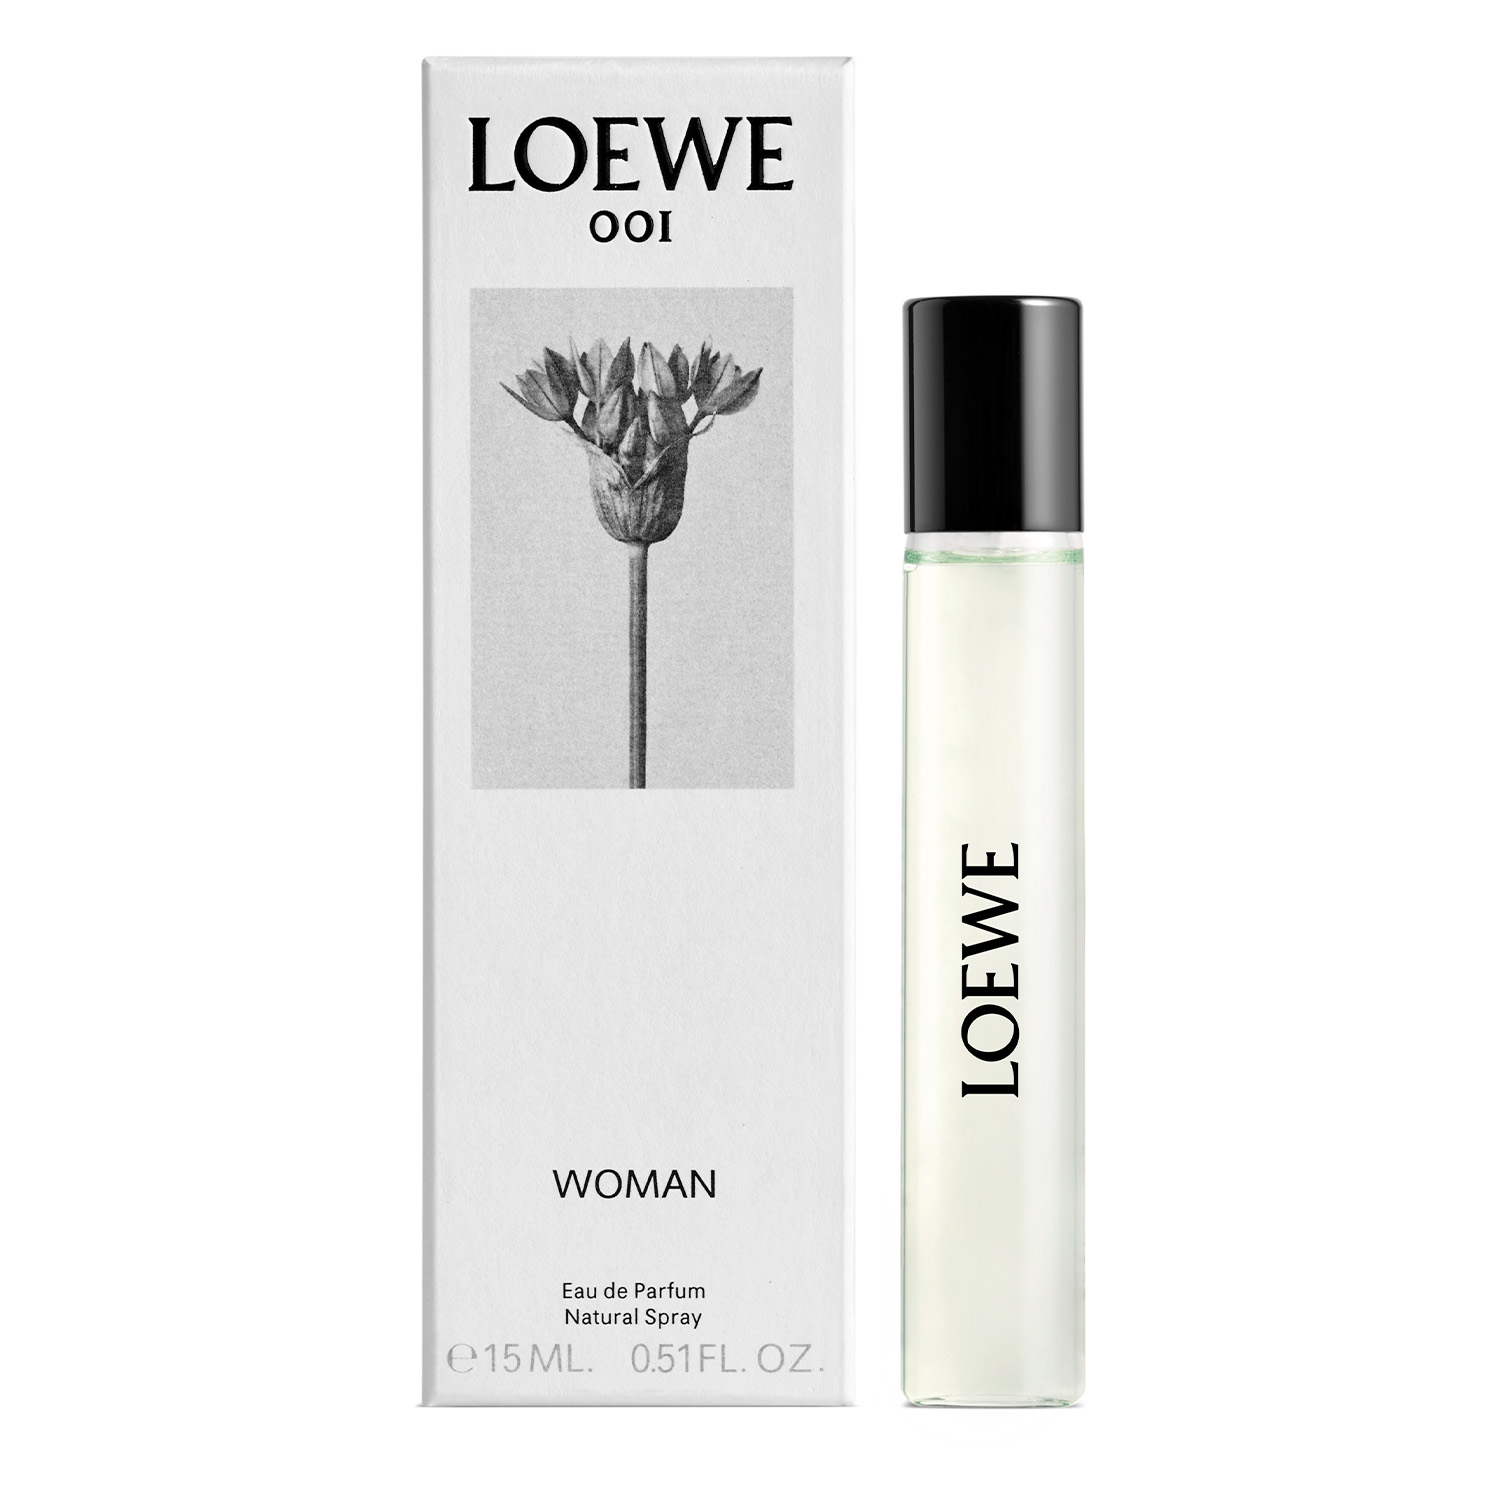 loewe 001 woman eau de parfum